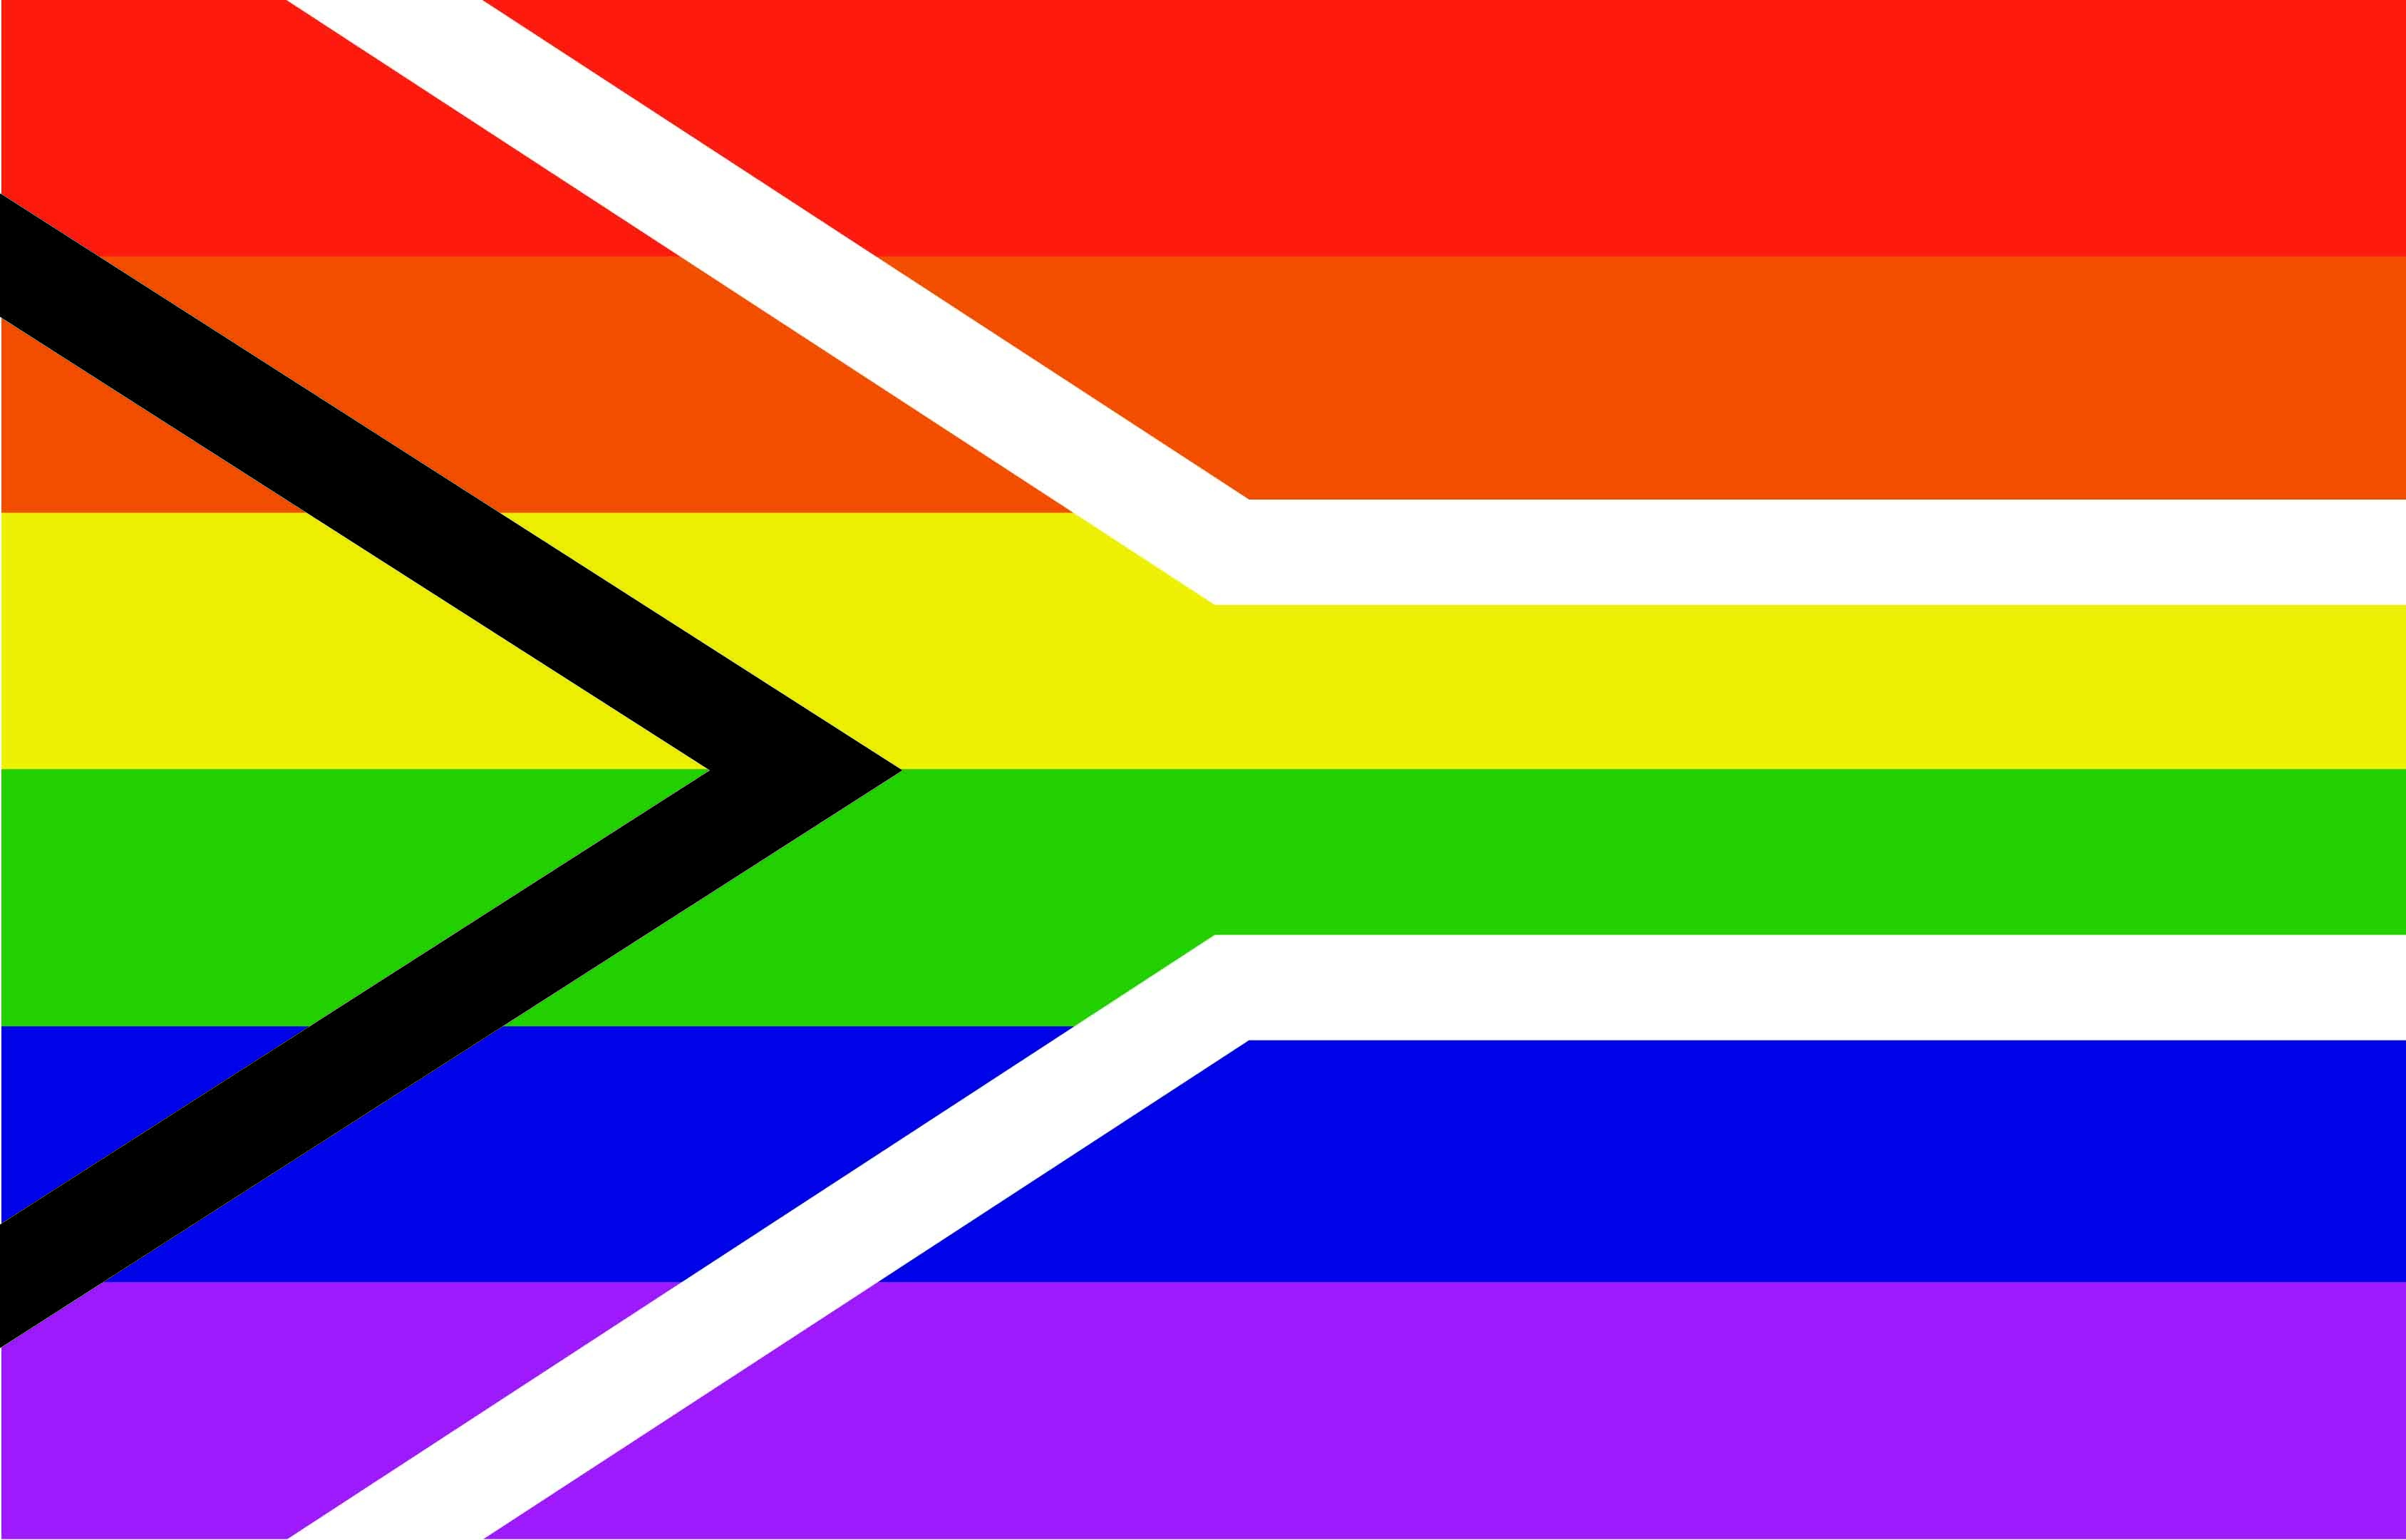 Pride flags. Флаг South Africa. Флаг Южно-африканской Республики. Флаги прайдов ЛГБТ. LGBTQIA+ флаг.